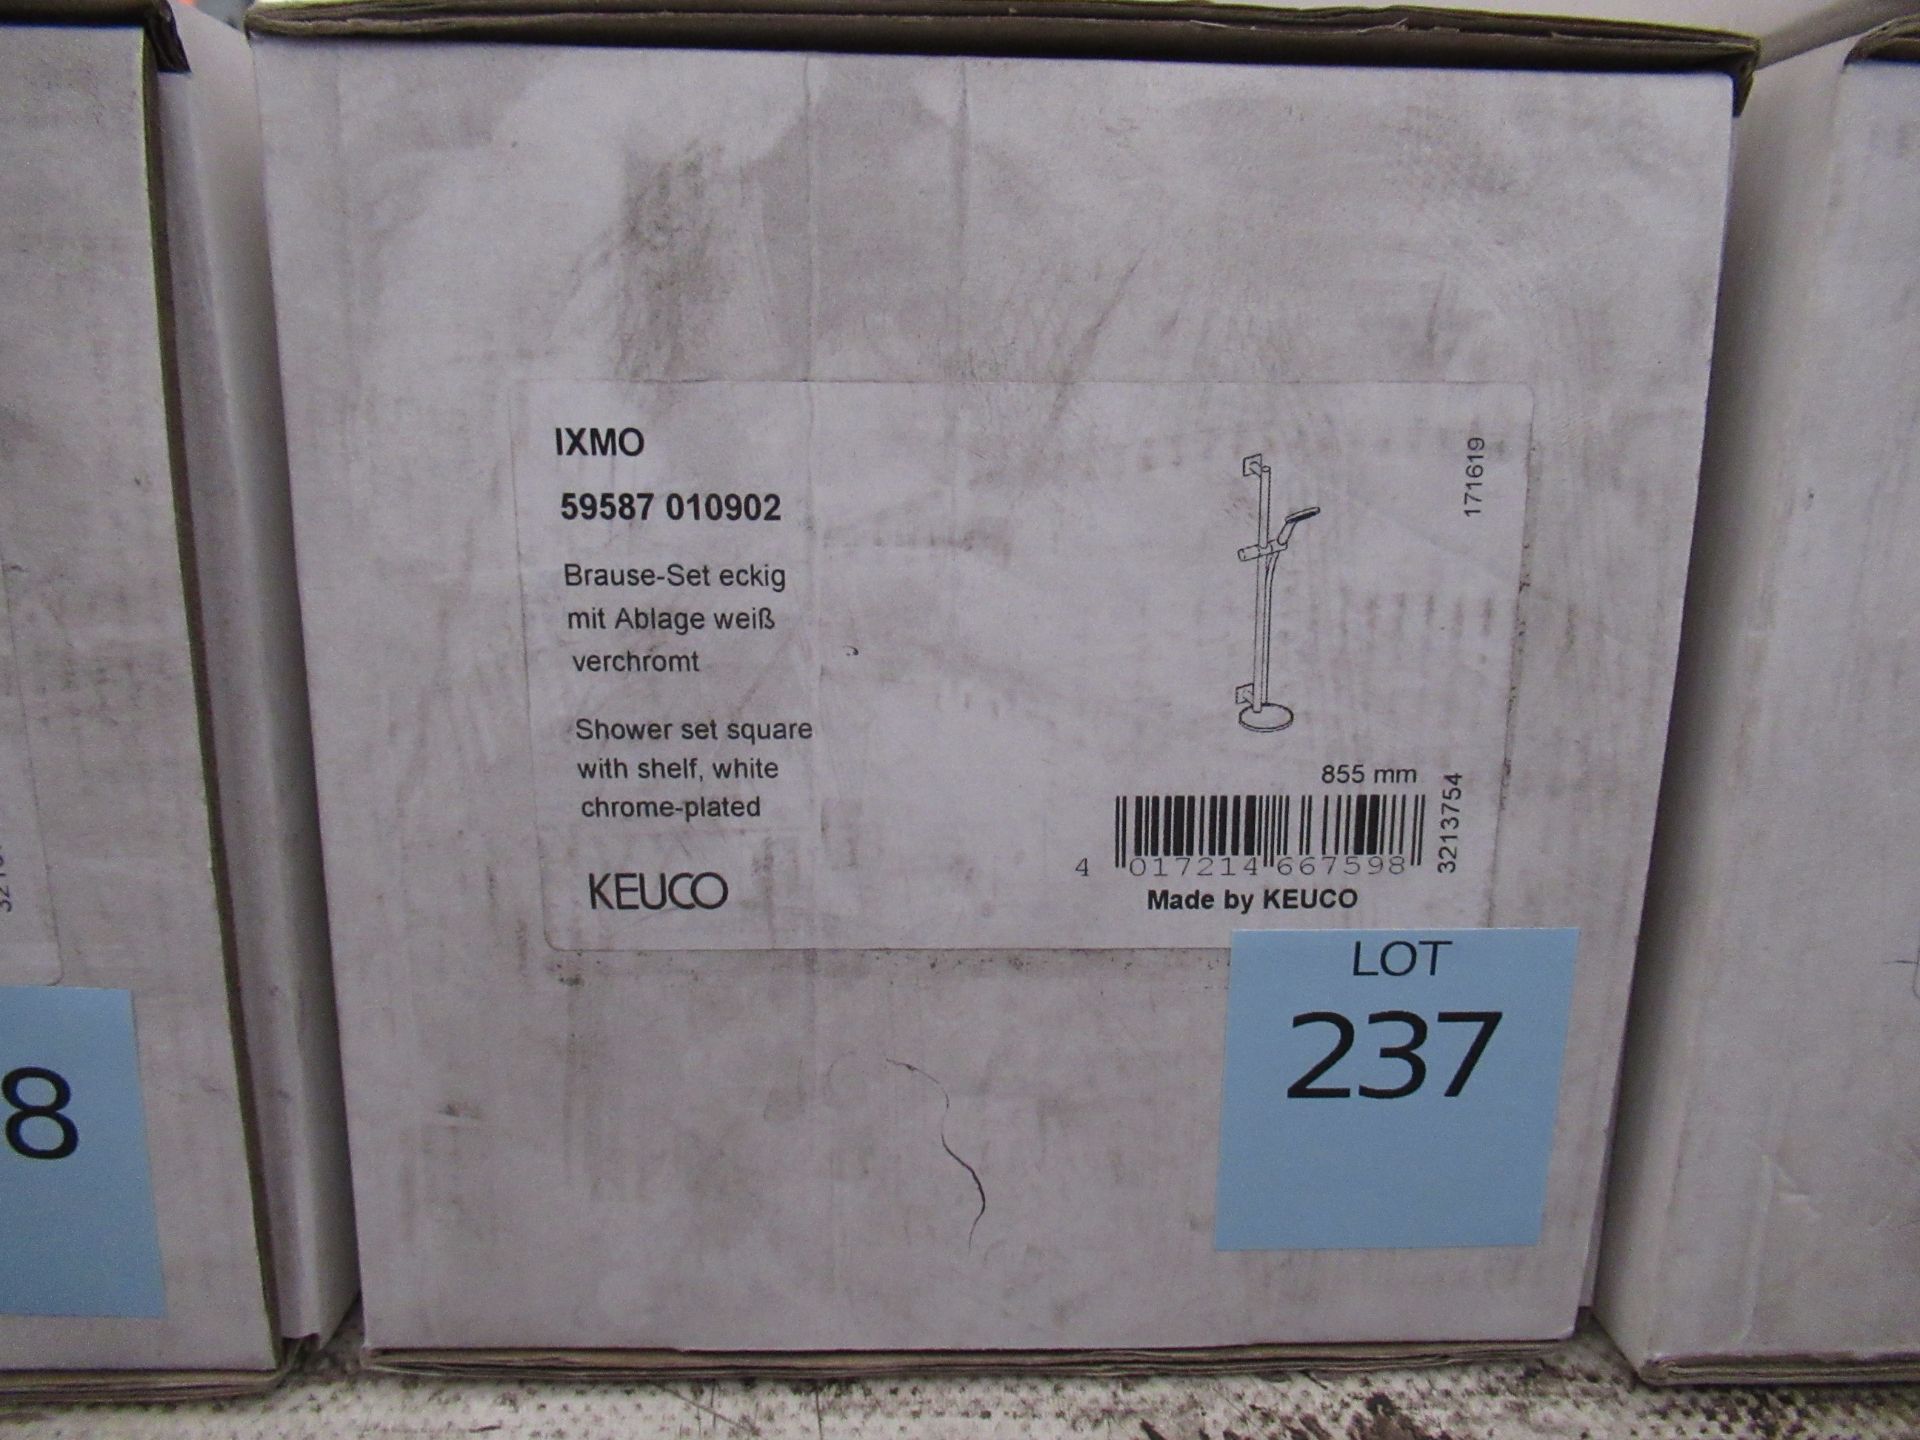 A Keuco IXMO Shower Set Square Chrome Plated, P/N 59587-010902